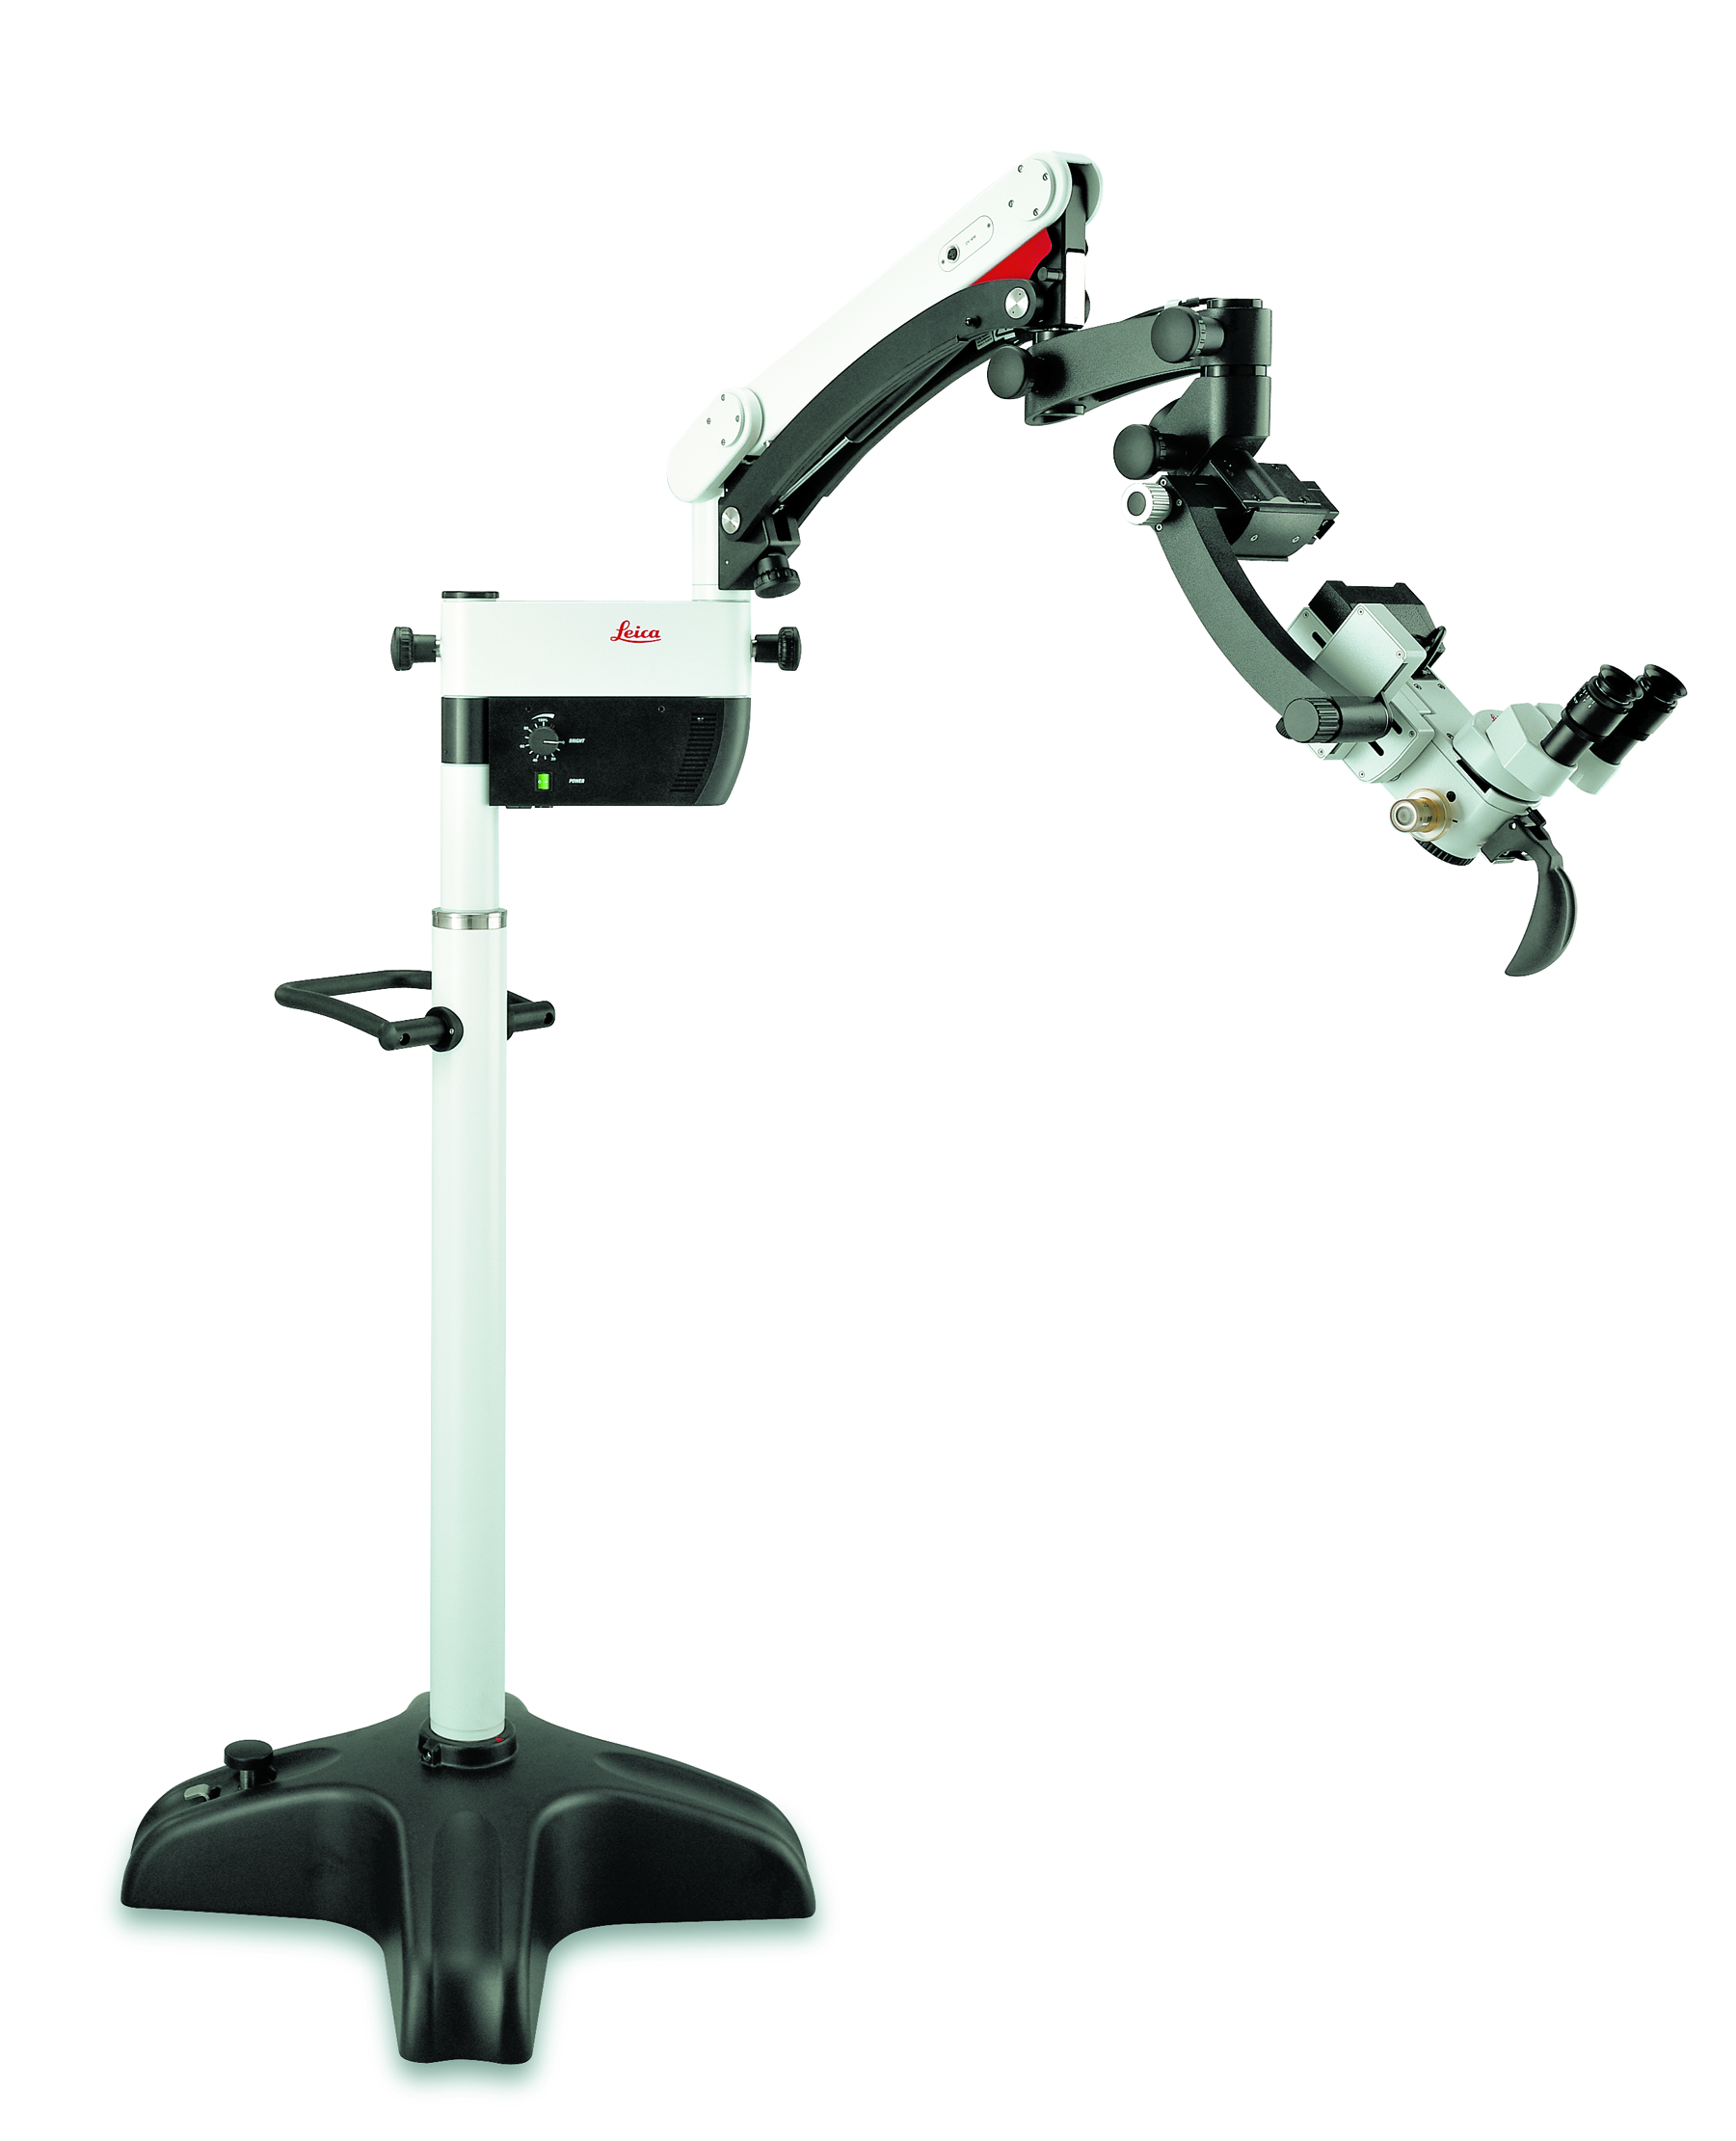 Das Operationsmikroskop Leica M400 E für HNO-Chirurgie